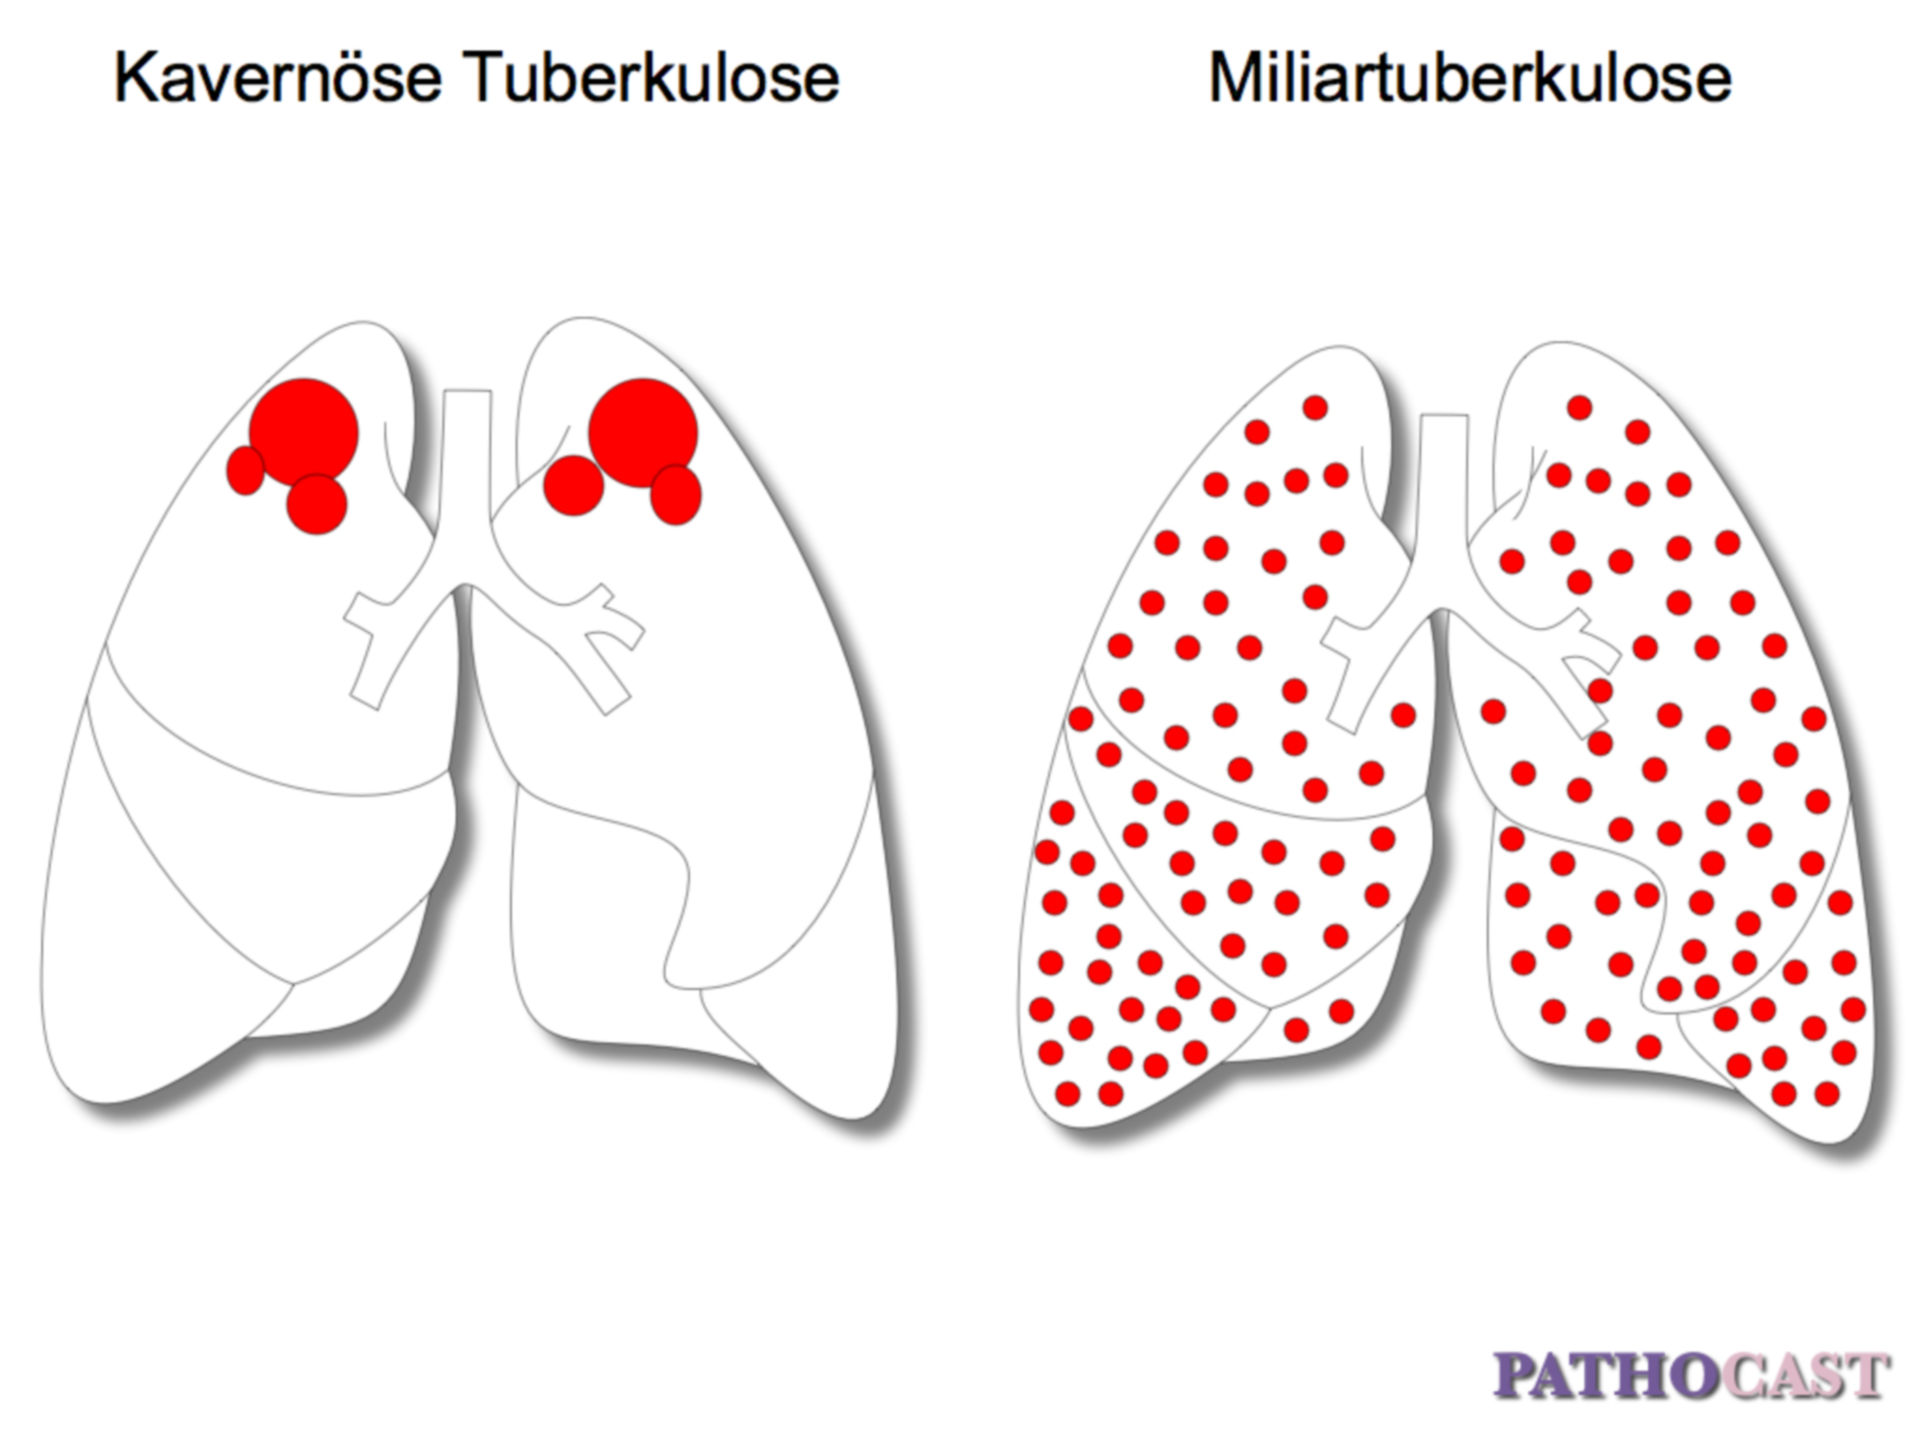 Caverna vs tubercolosi miliare